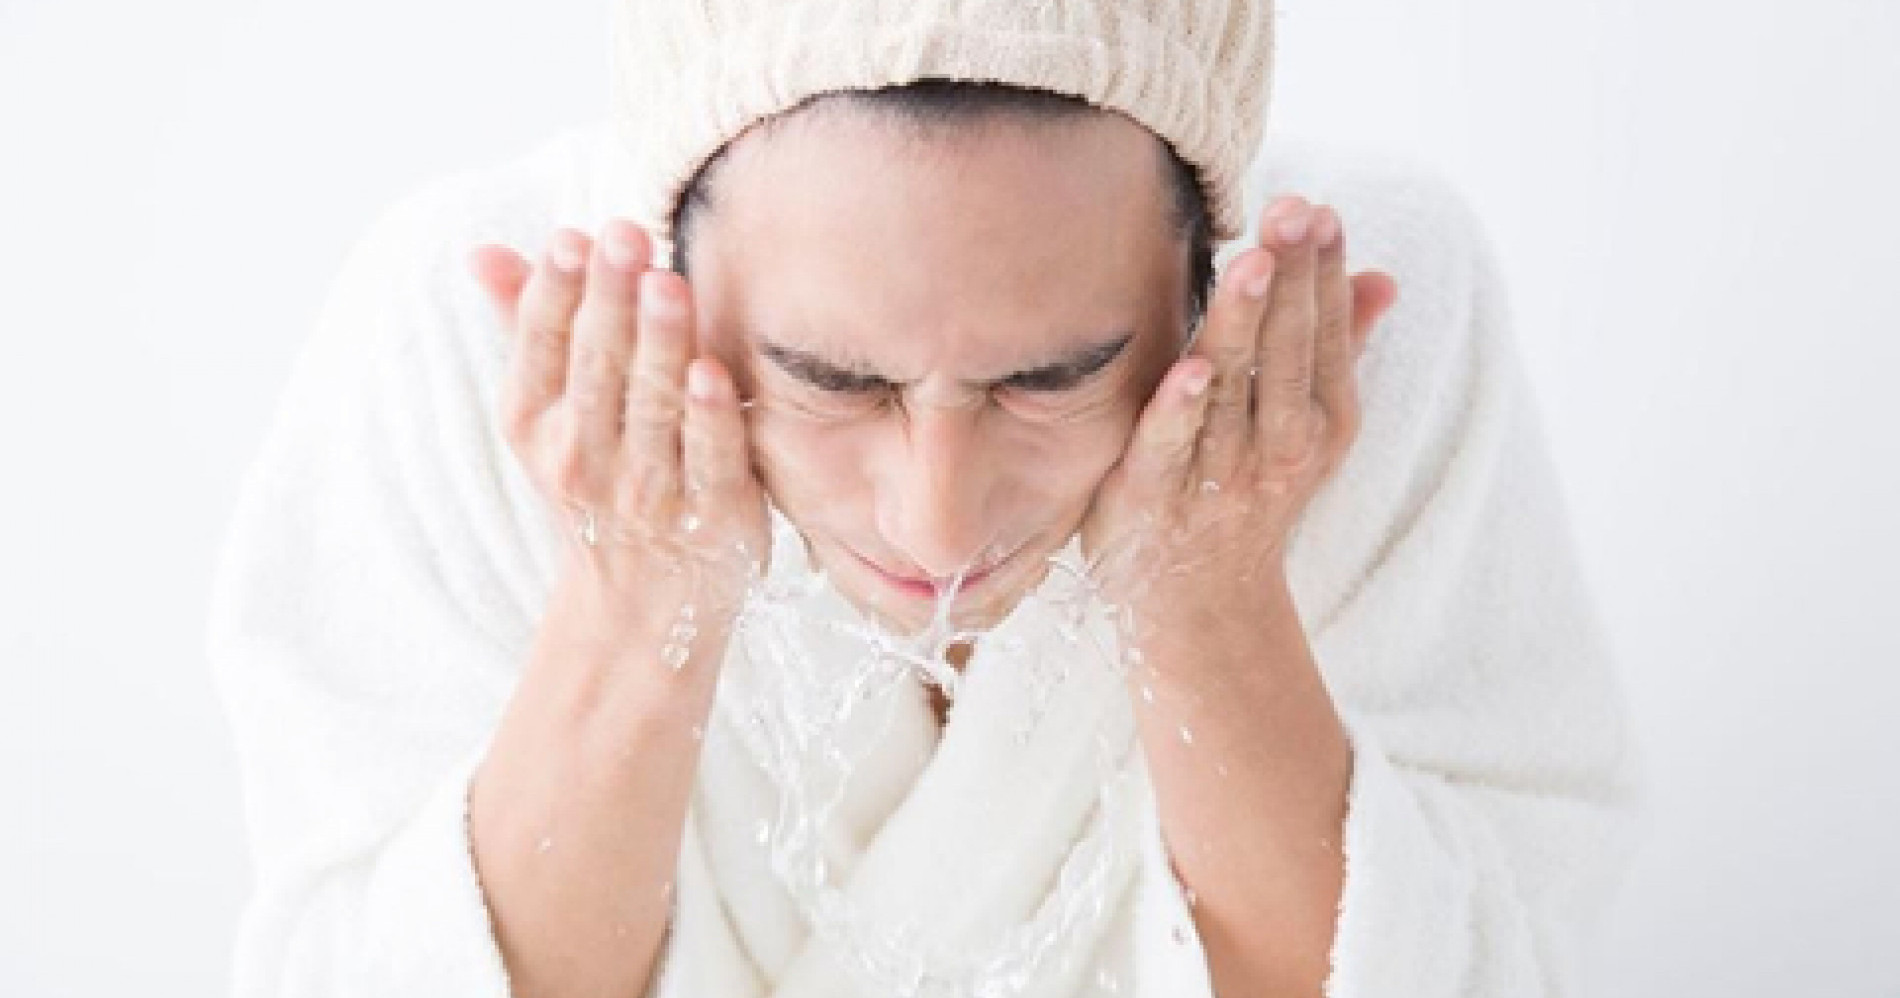 Jangan mencuci wajah tiap kali mandi (Sumber: sehatq.com)